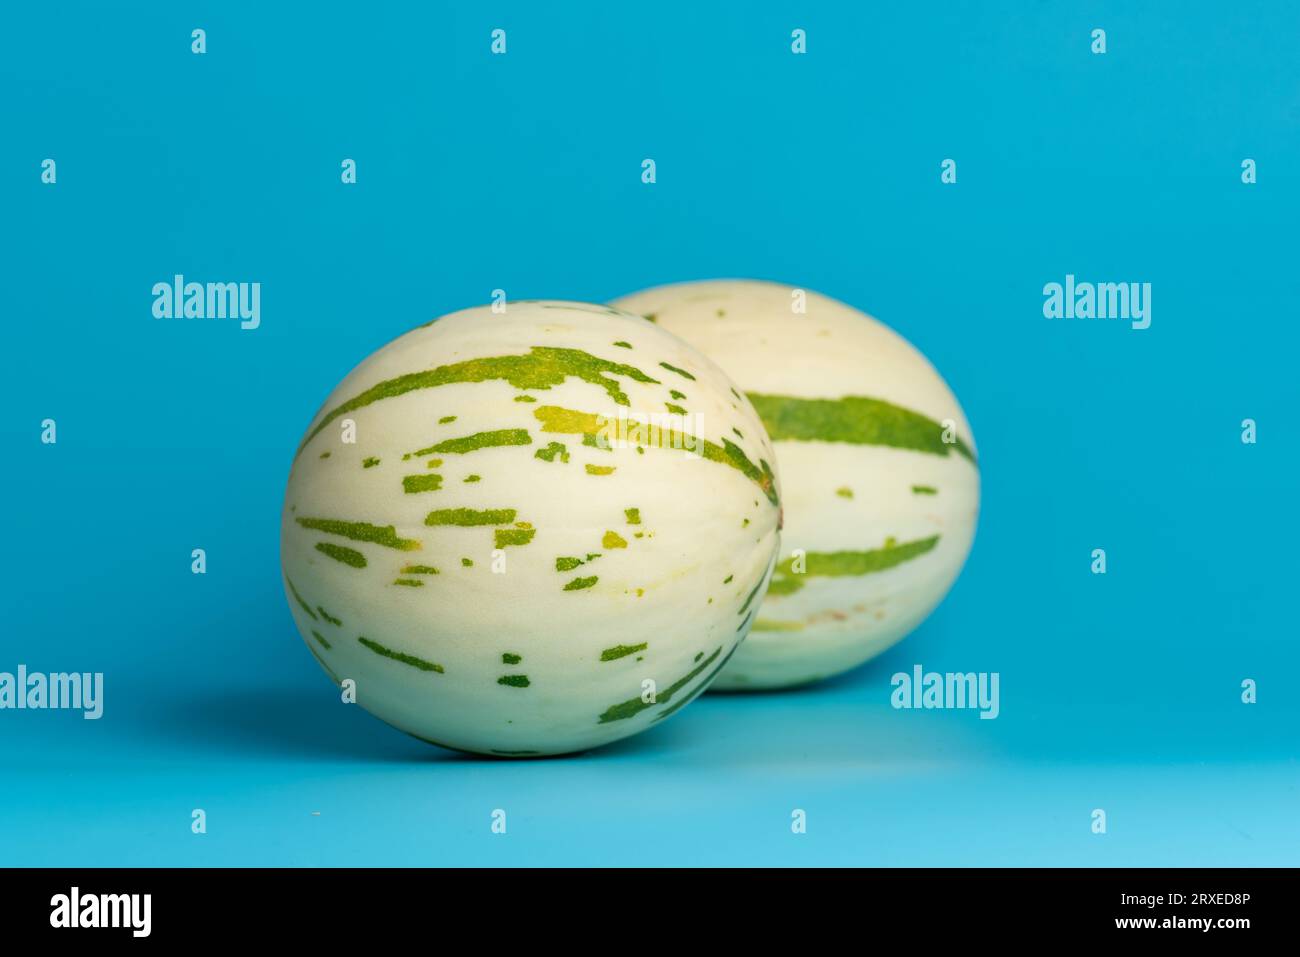 Melon gaya ivoire avec des rayures pointillées vertes et des taches sur un fond bleu. Fruits mûrs et juteux colorés, goût sucré avec des notes florales Banque D'Images